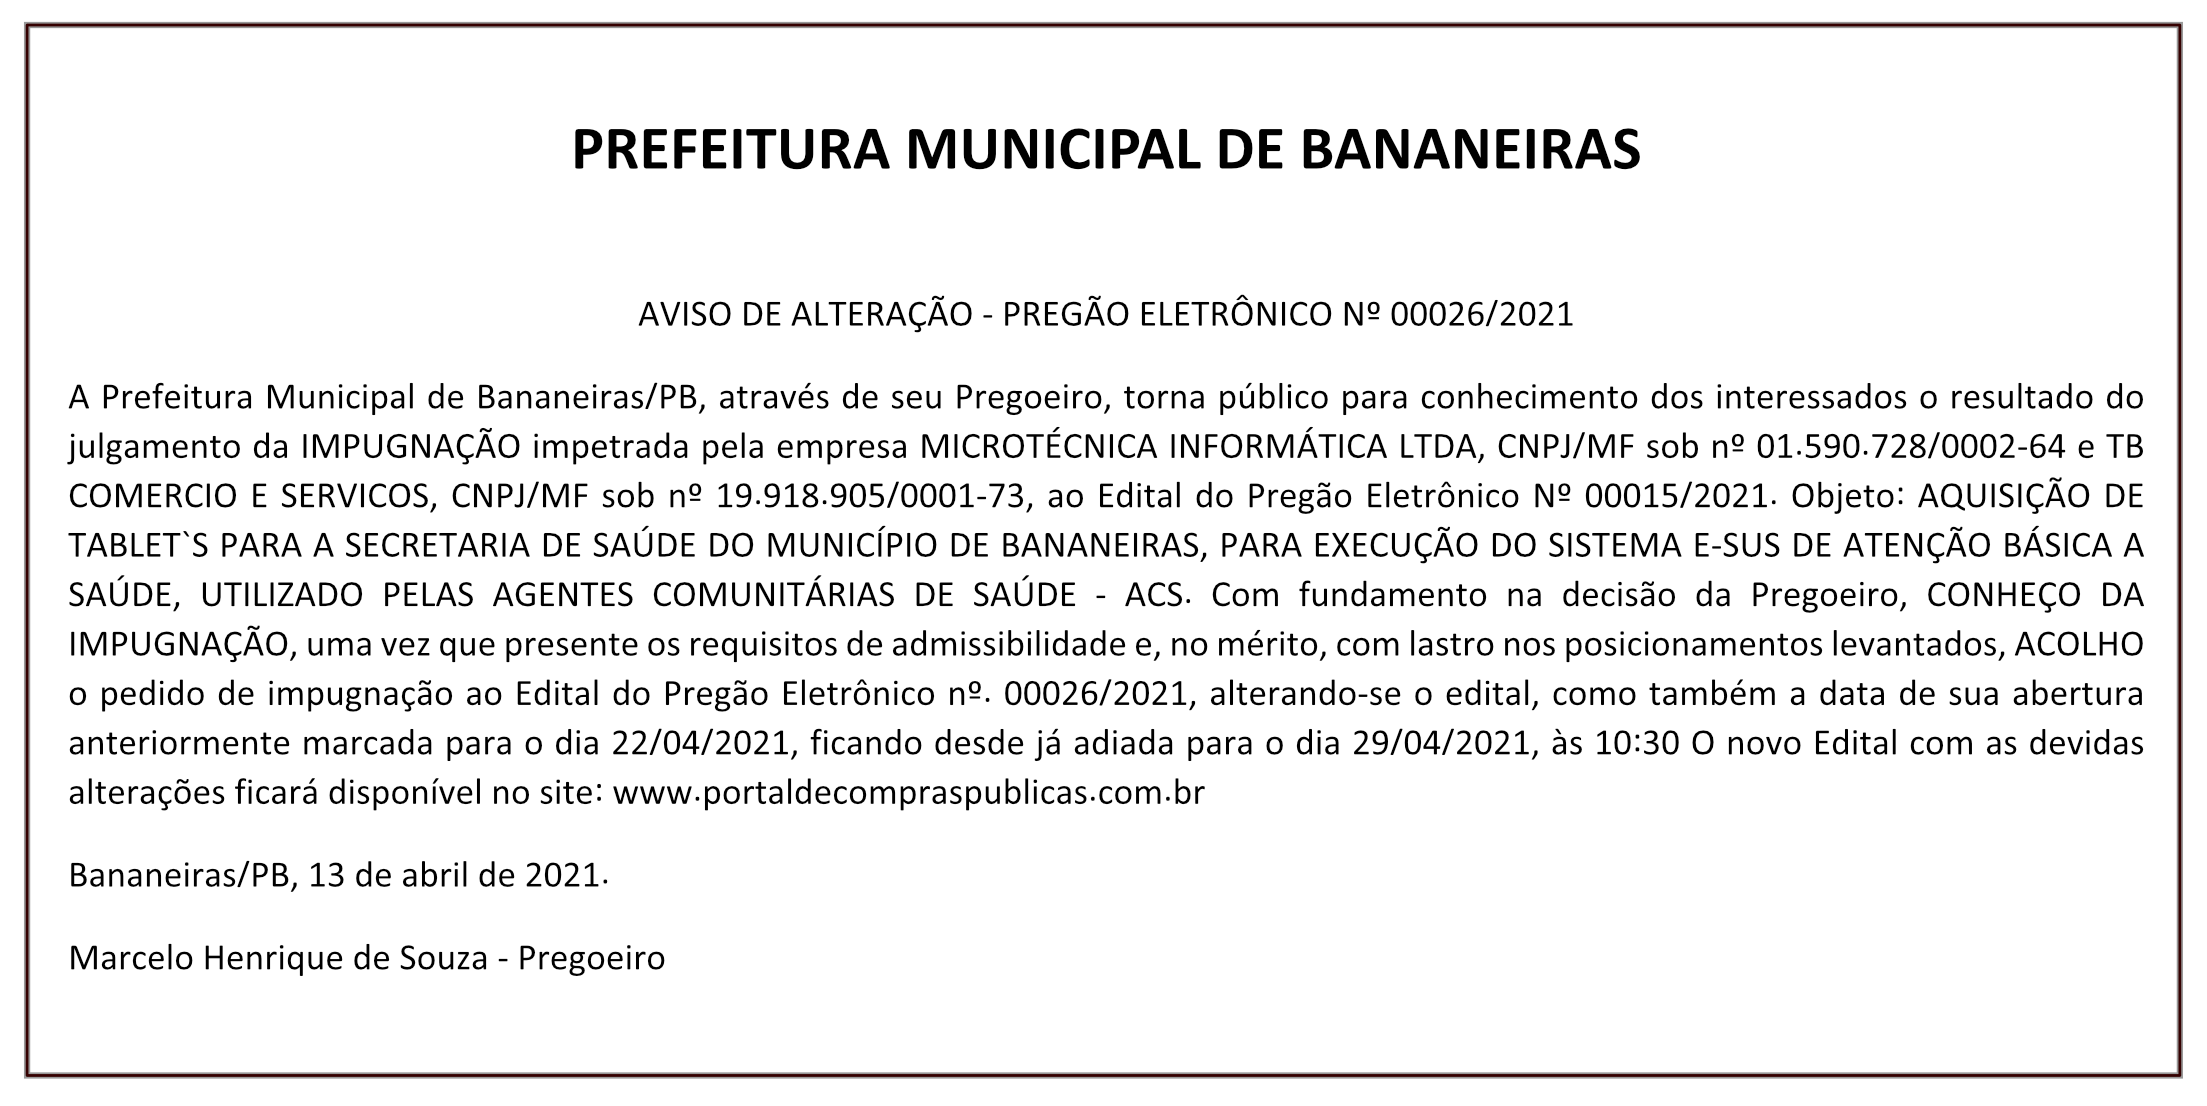 Prefeitura Municipal de Bananeiras – AVISO DE ALTERAÇÃO – PREGÃO ELETRÔNICO Nº 00026/2021